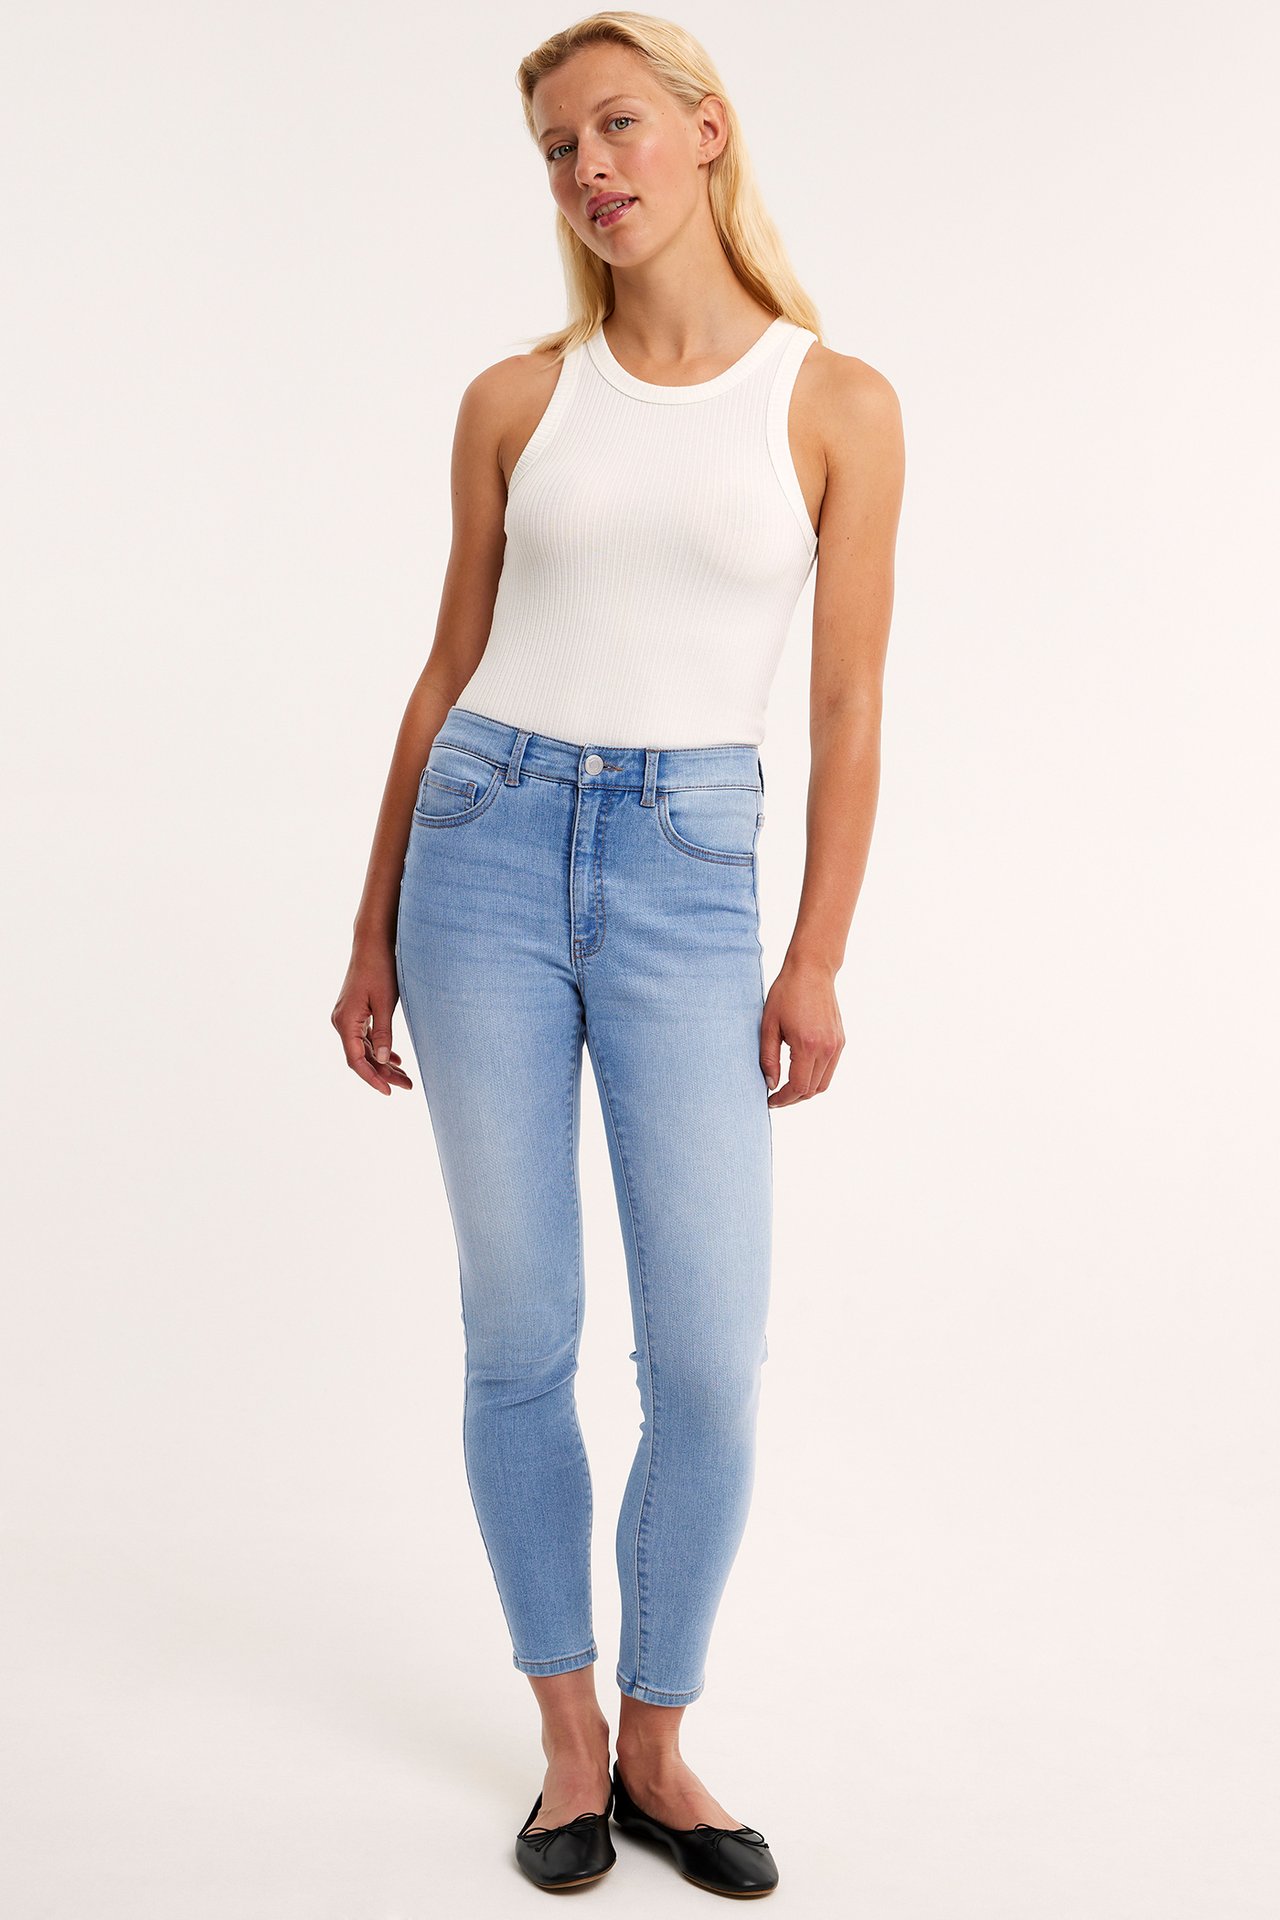 Cropped Slim Jeans Mid Waist - Jasny dżins - 2